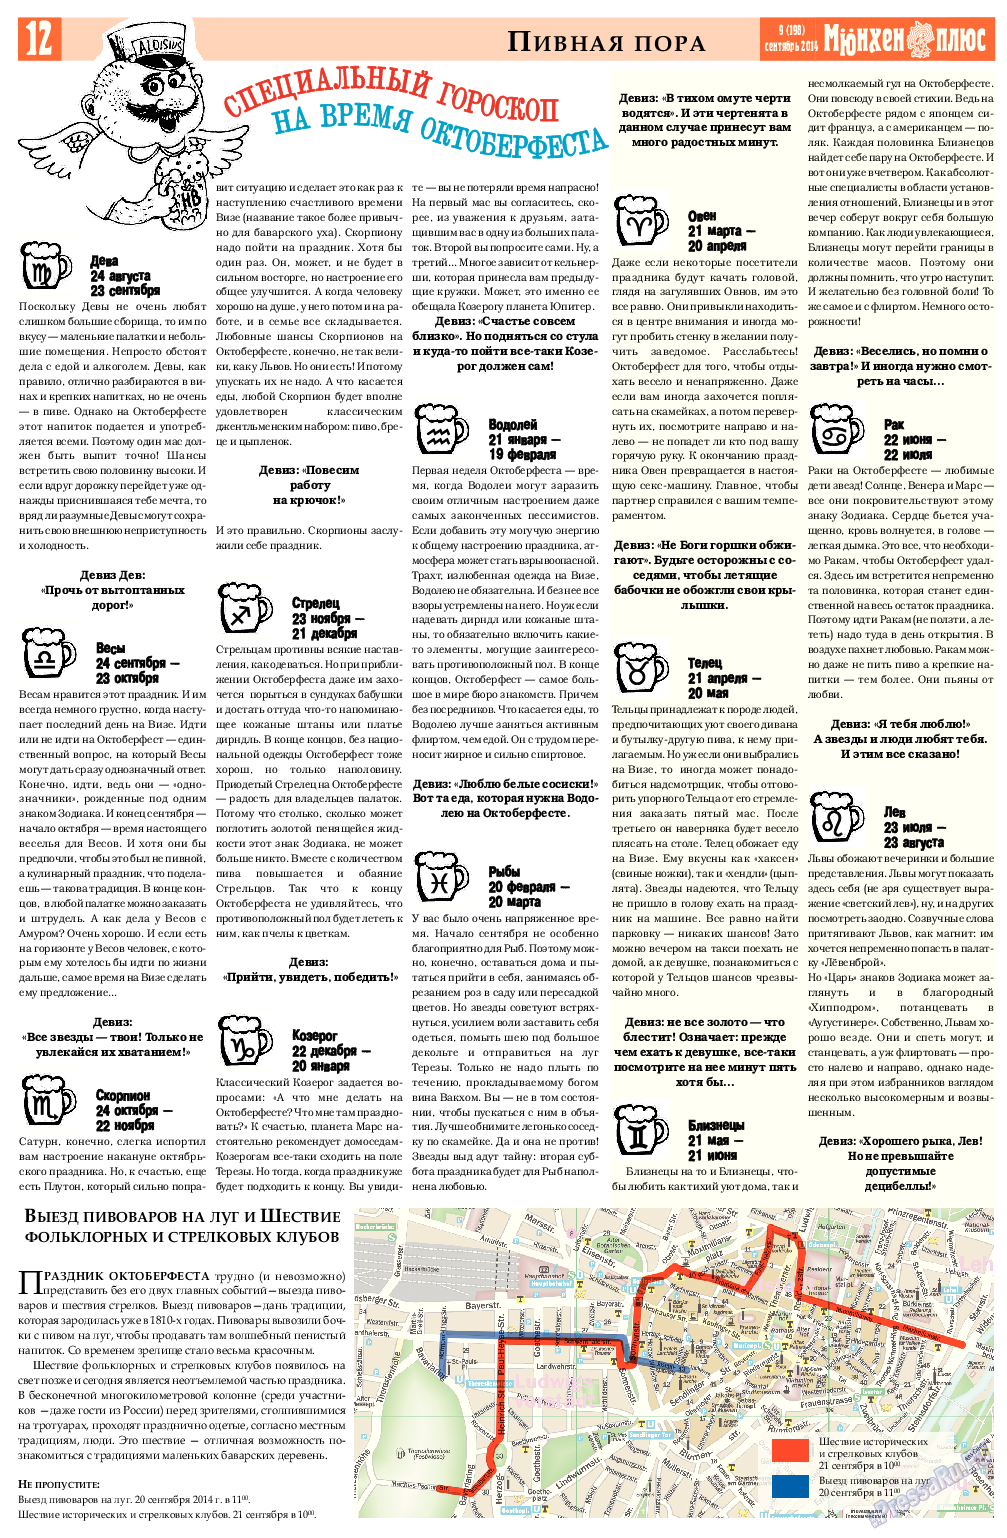 Германия плюс, газета. 2014 №8 стр.12